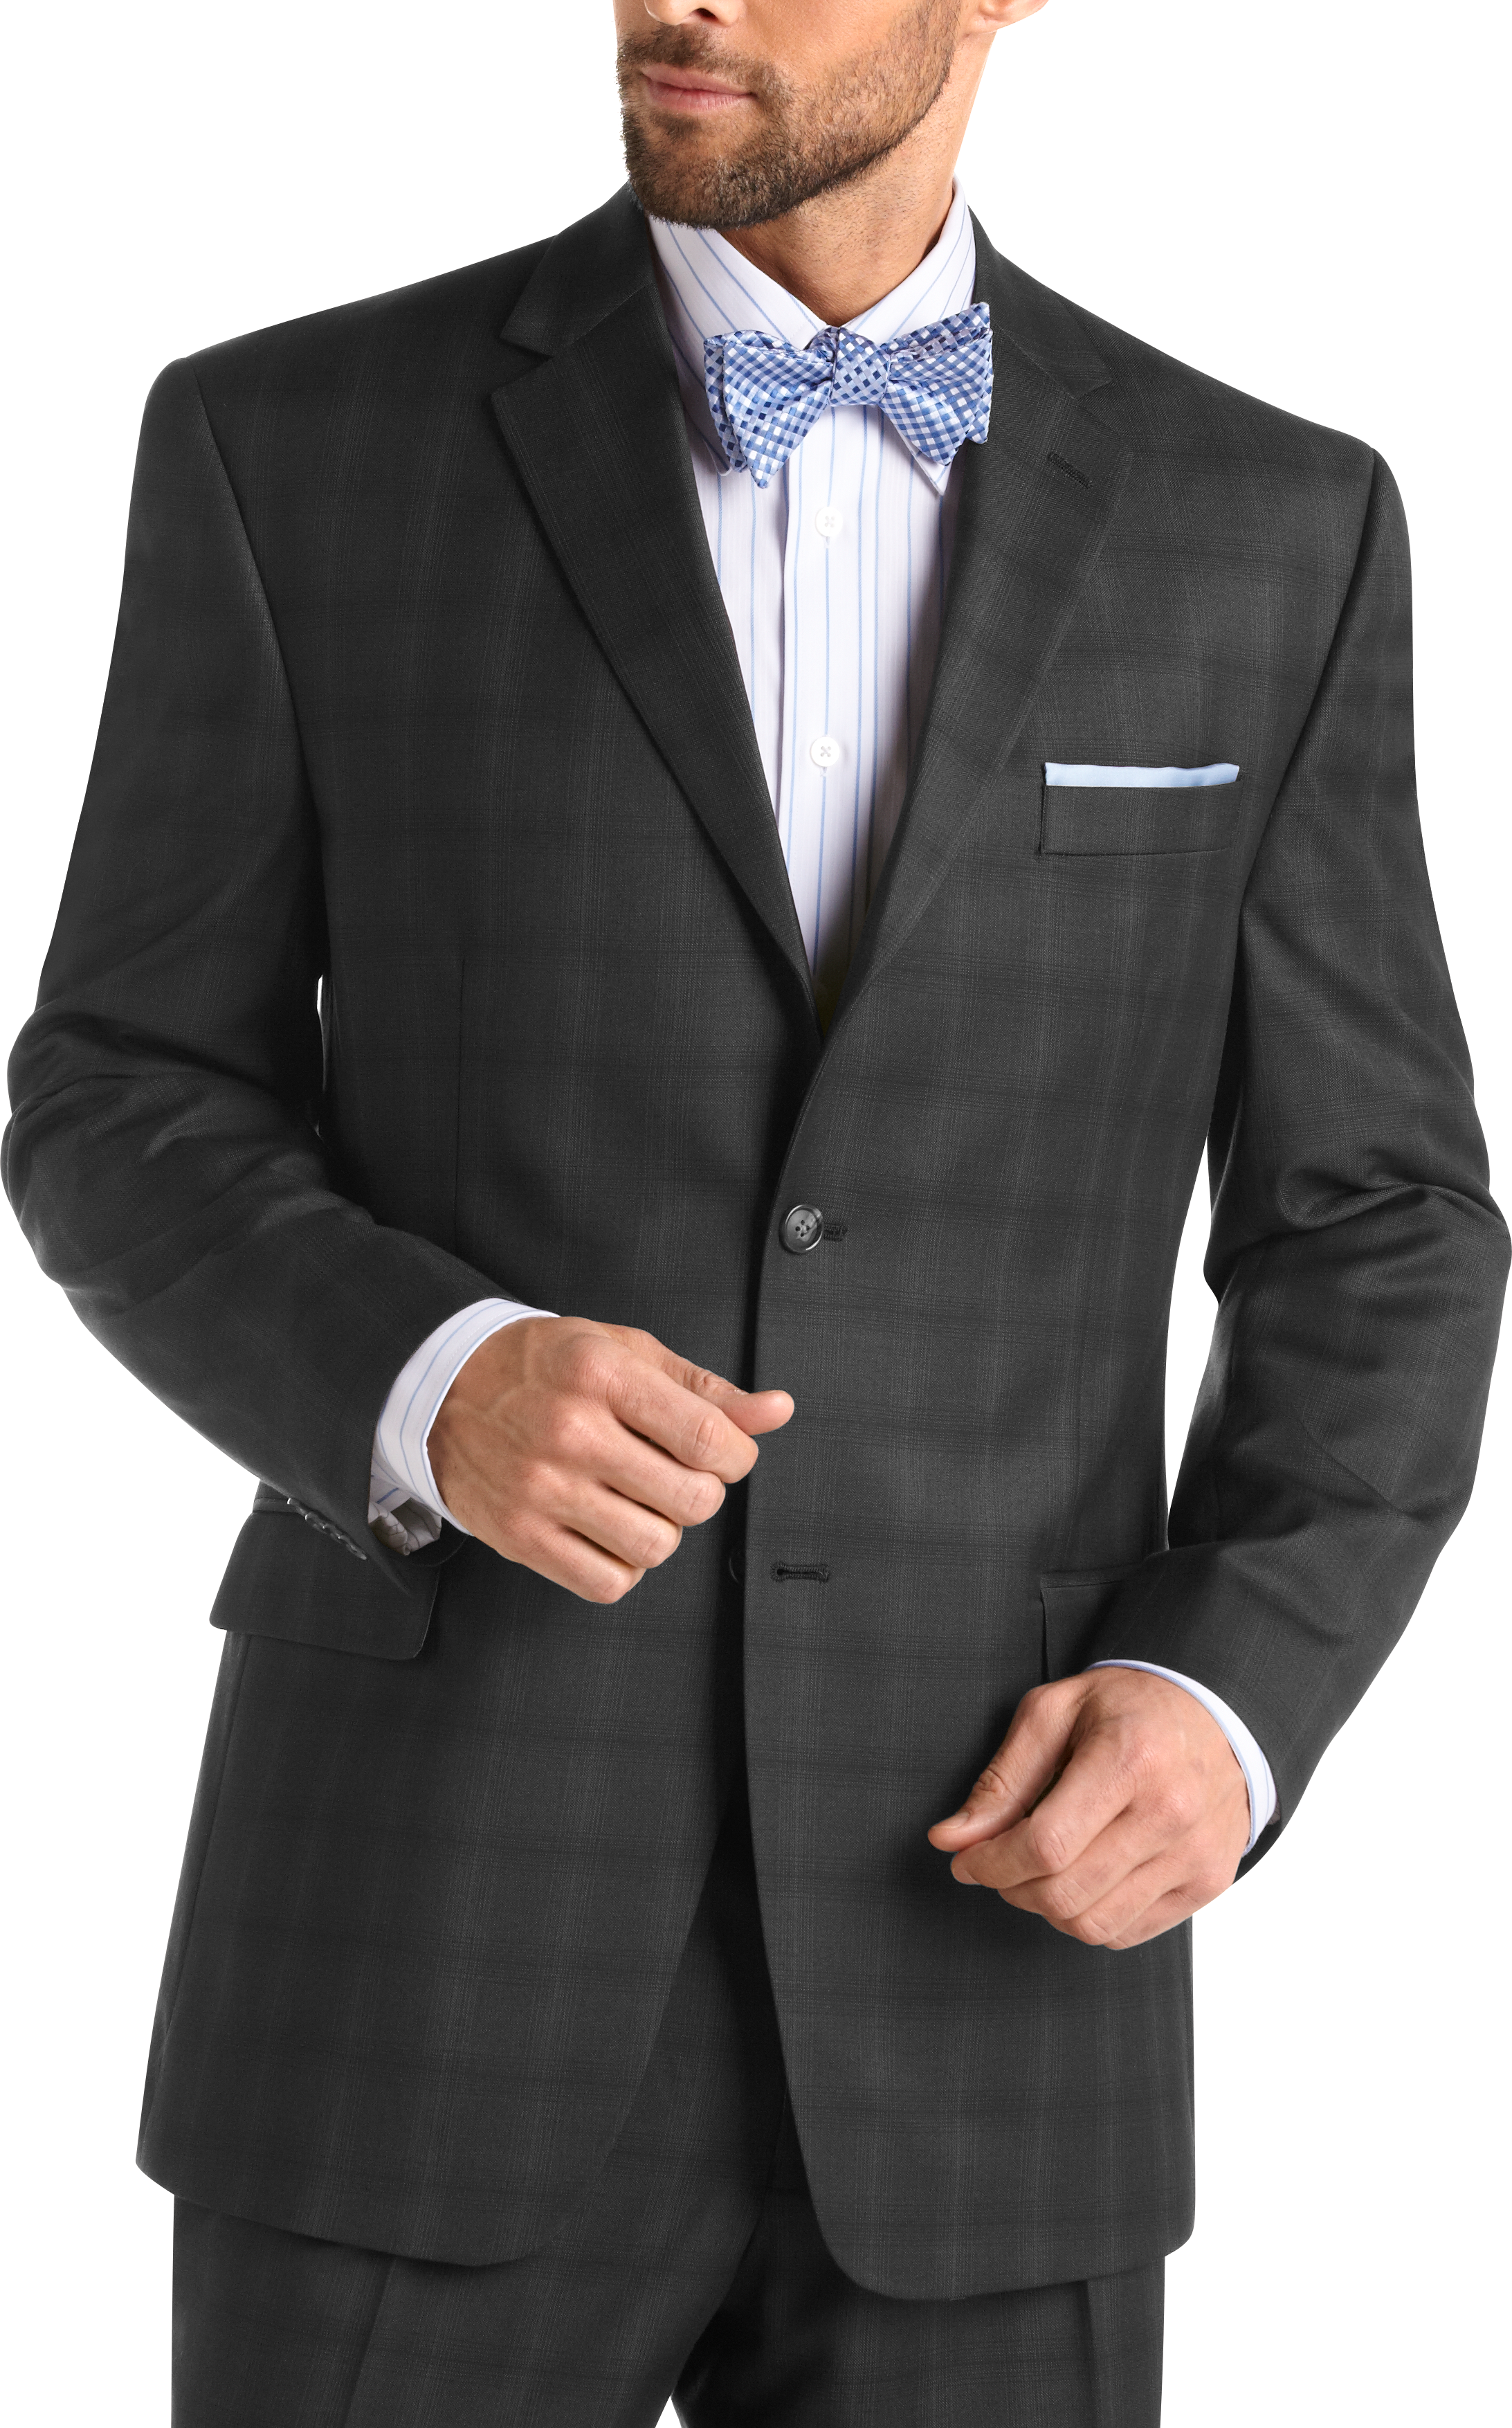 Sean John Charcoal Gray Plaid Suit - Men's Sale | Men's Wearhouse